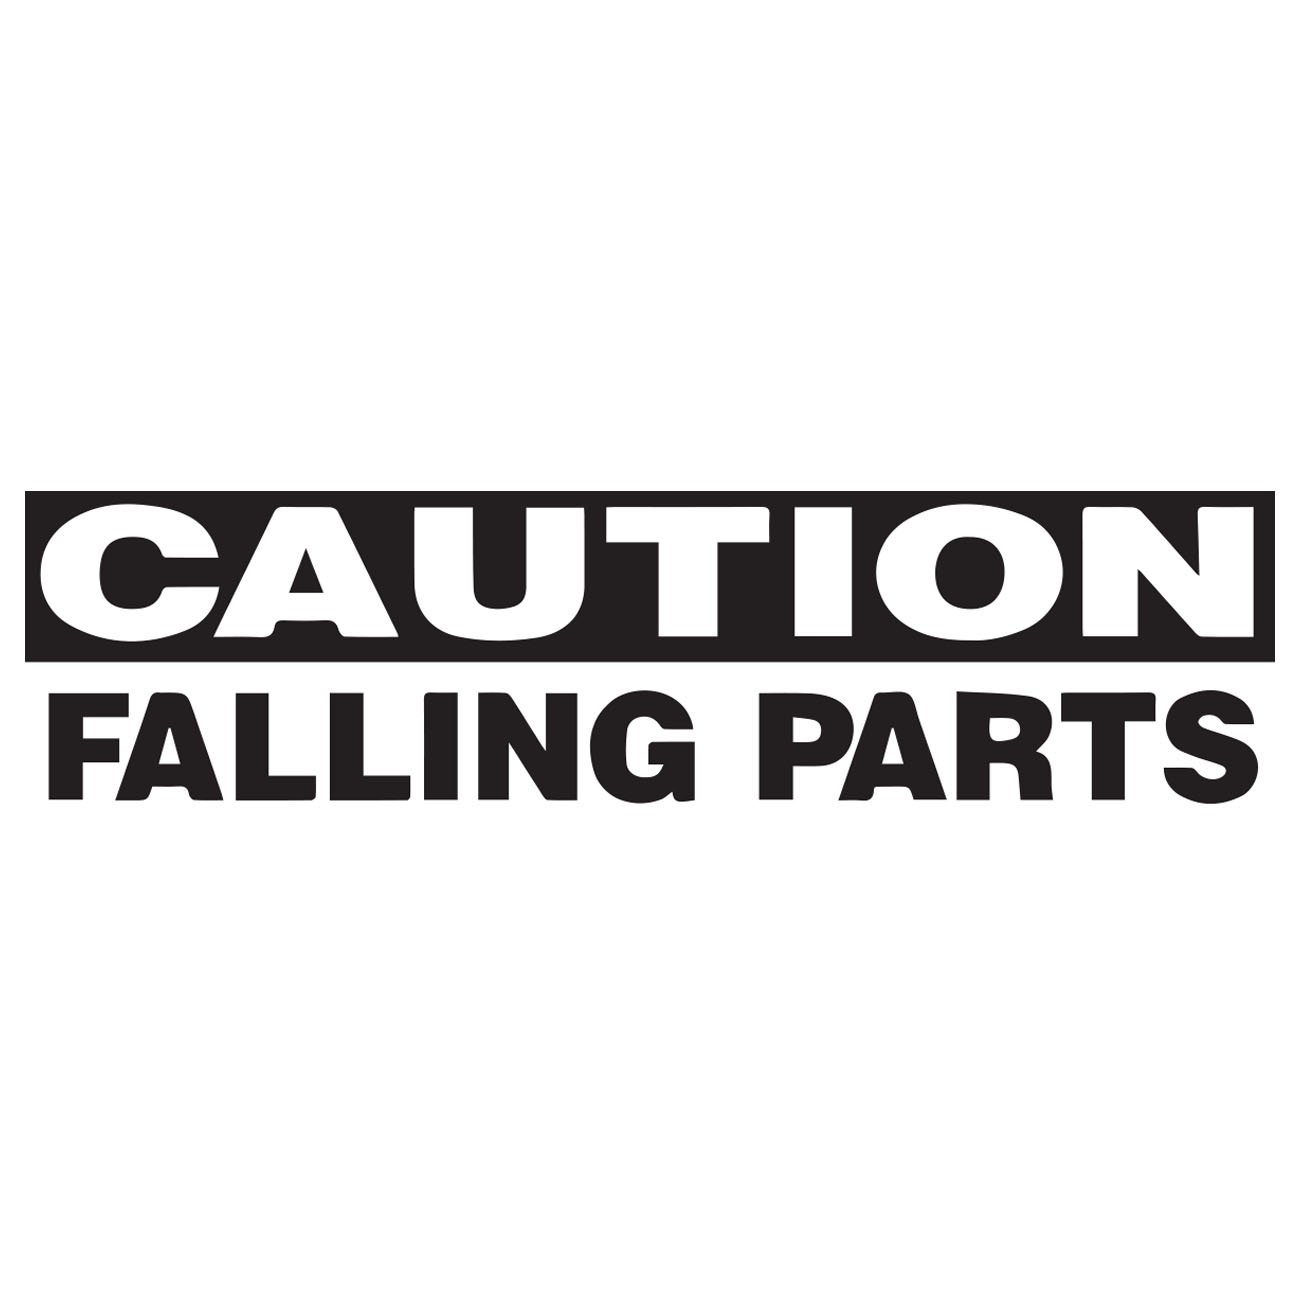 Caution - Falling Parts